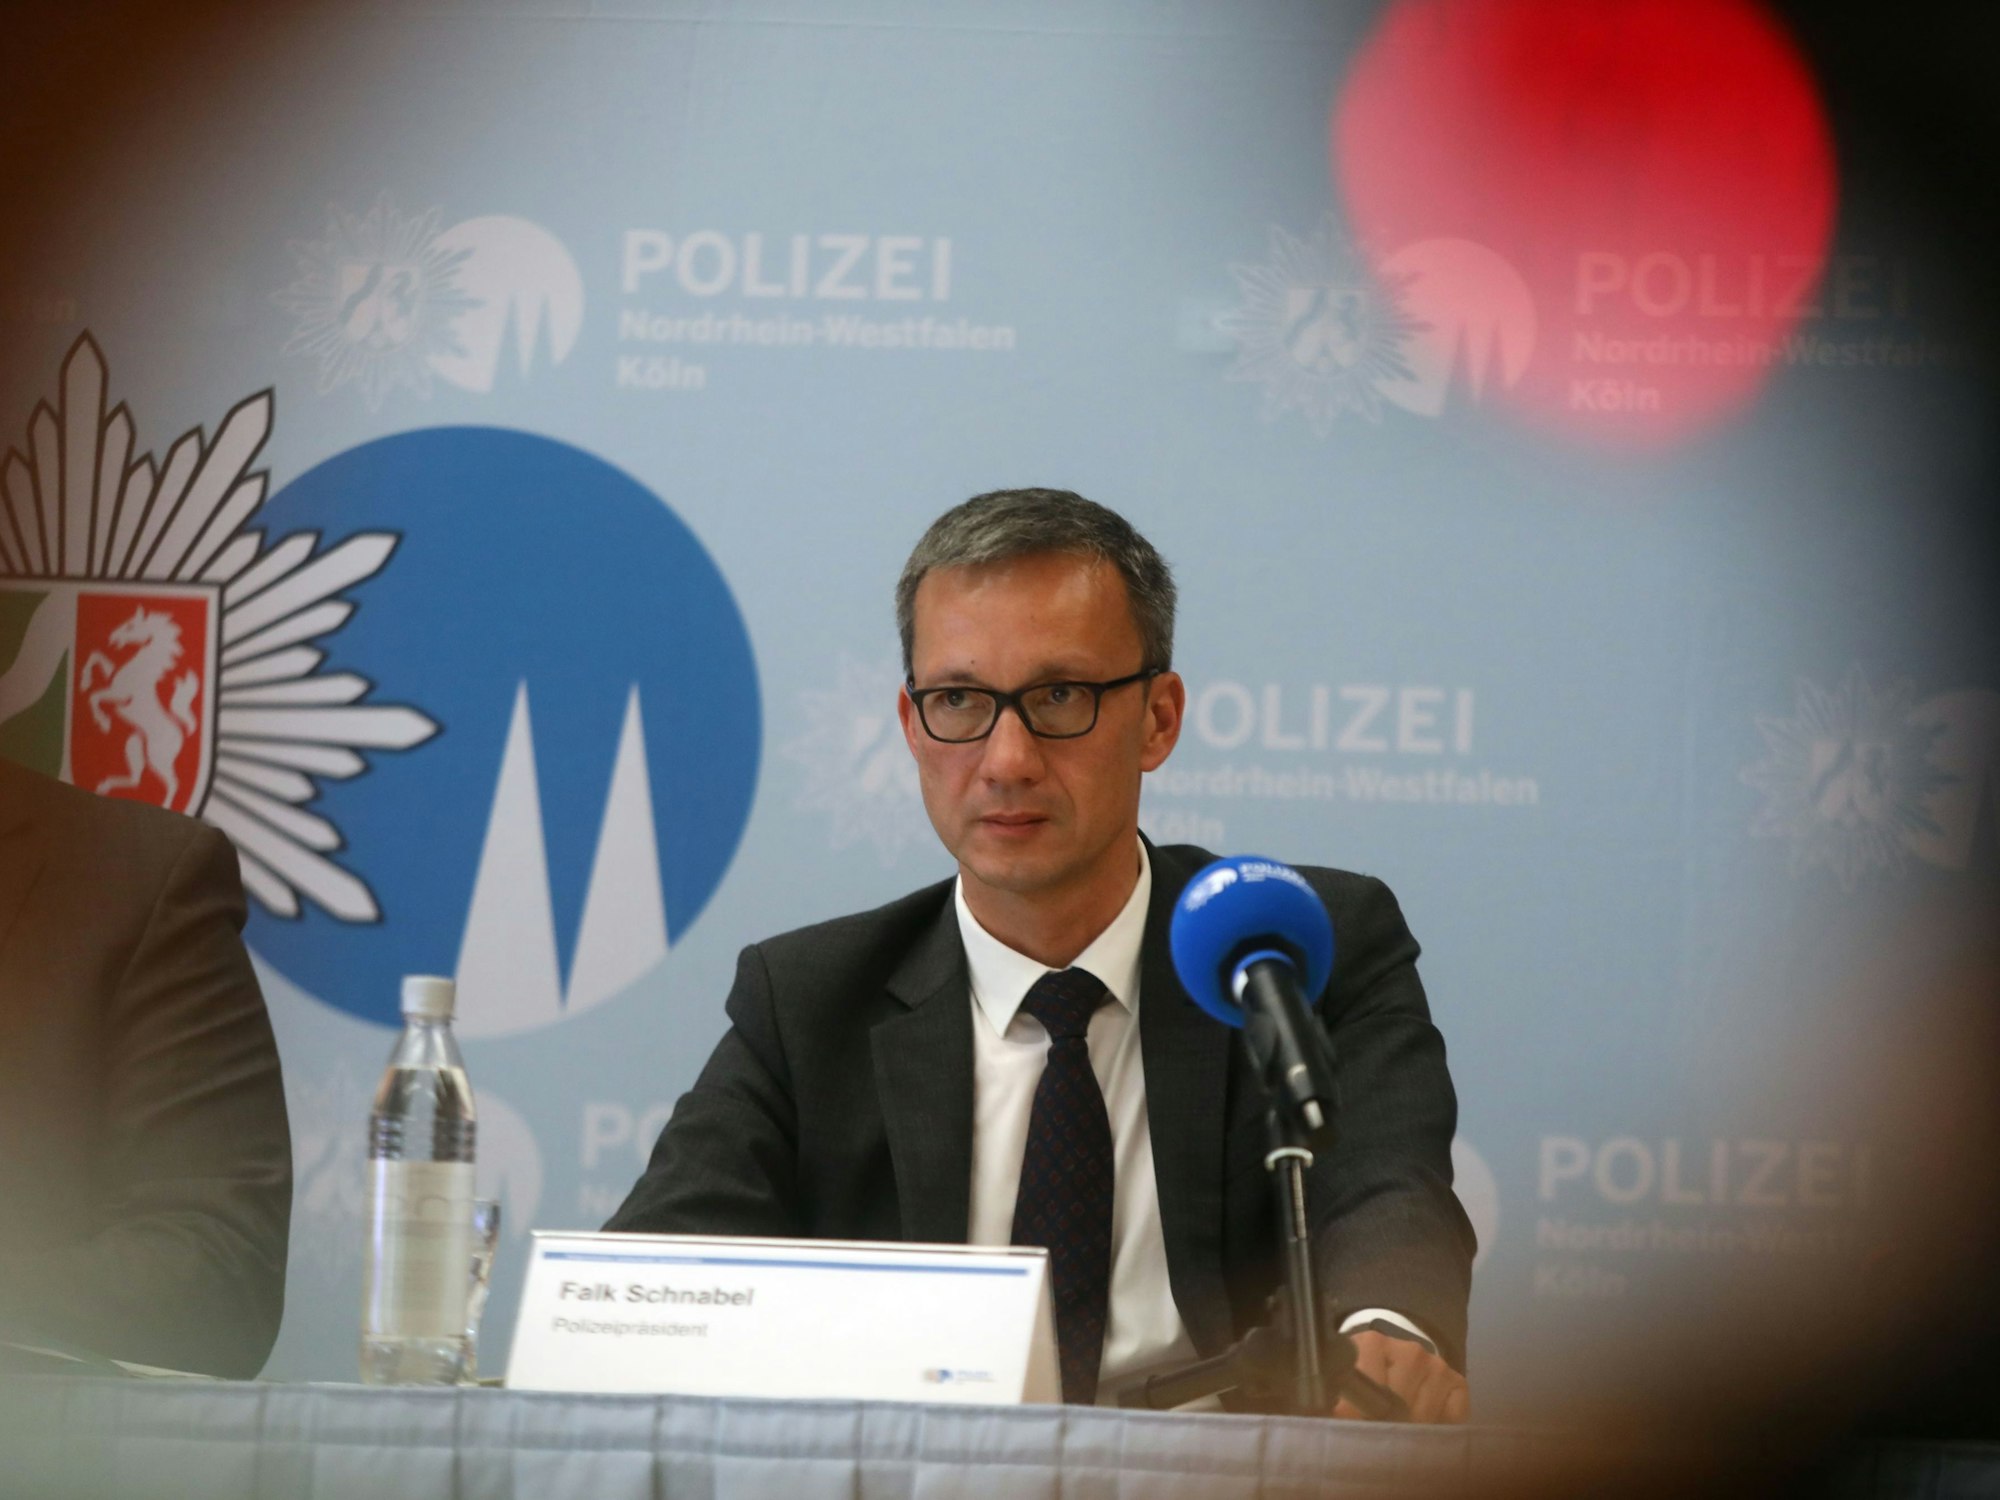 Polizeipräsident, Falk Schnabel, erklärt die Ergebnisse einer Ermittlung auf einer PK.